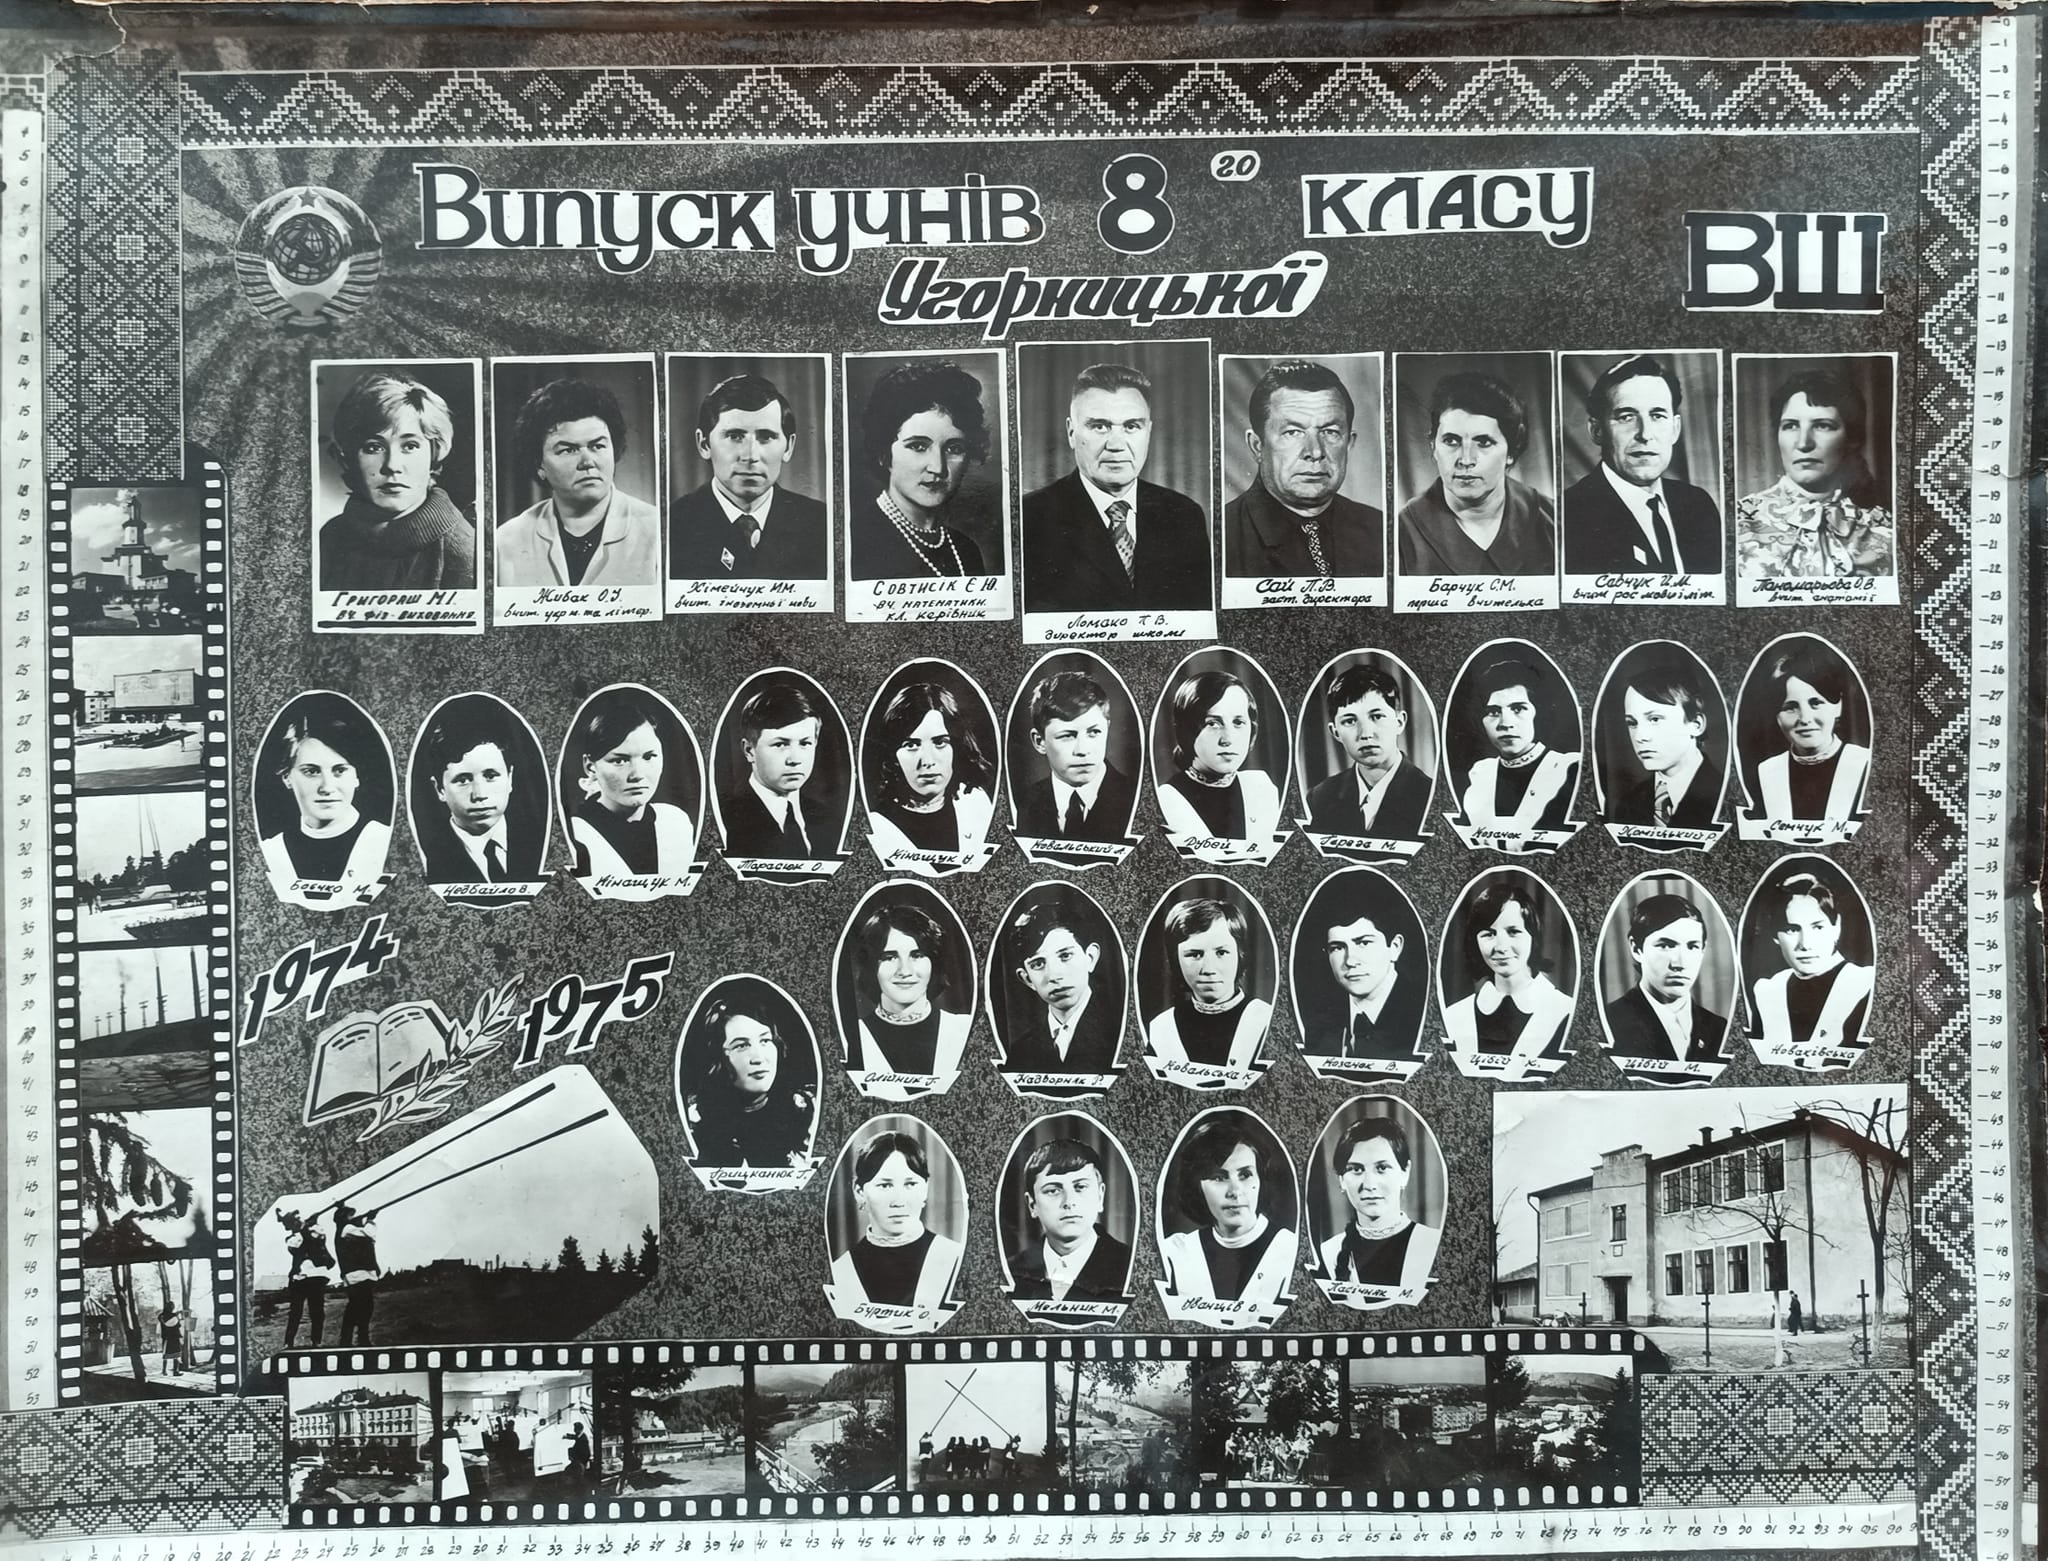 Угорницька школа 1975